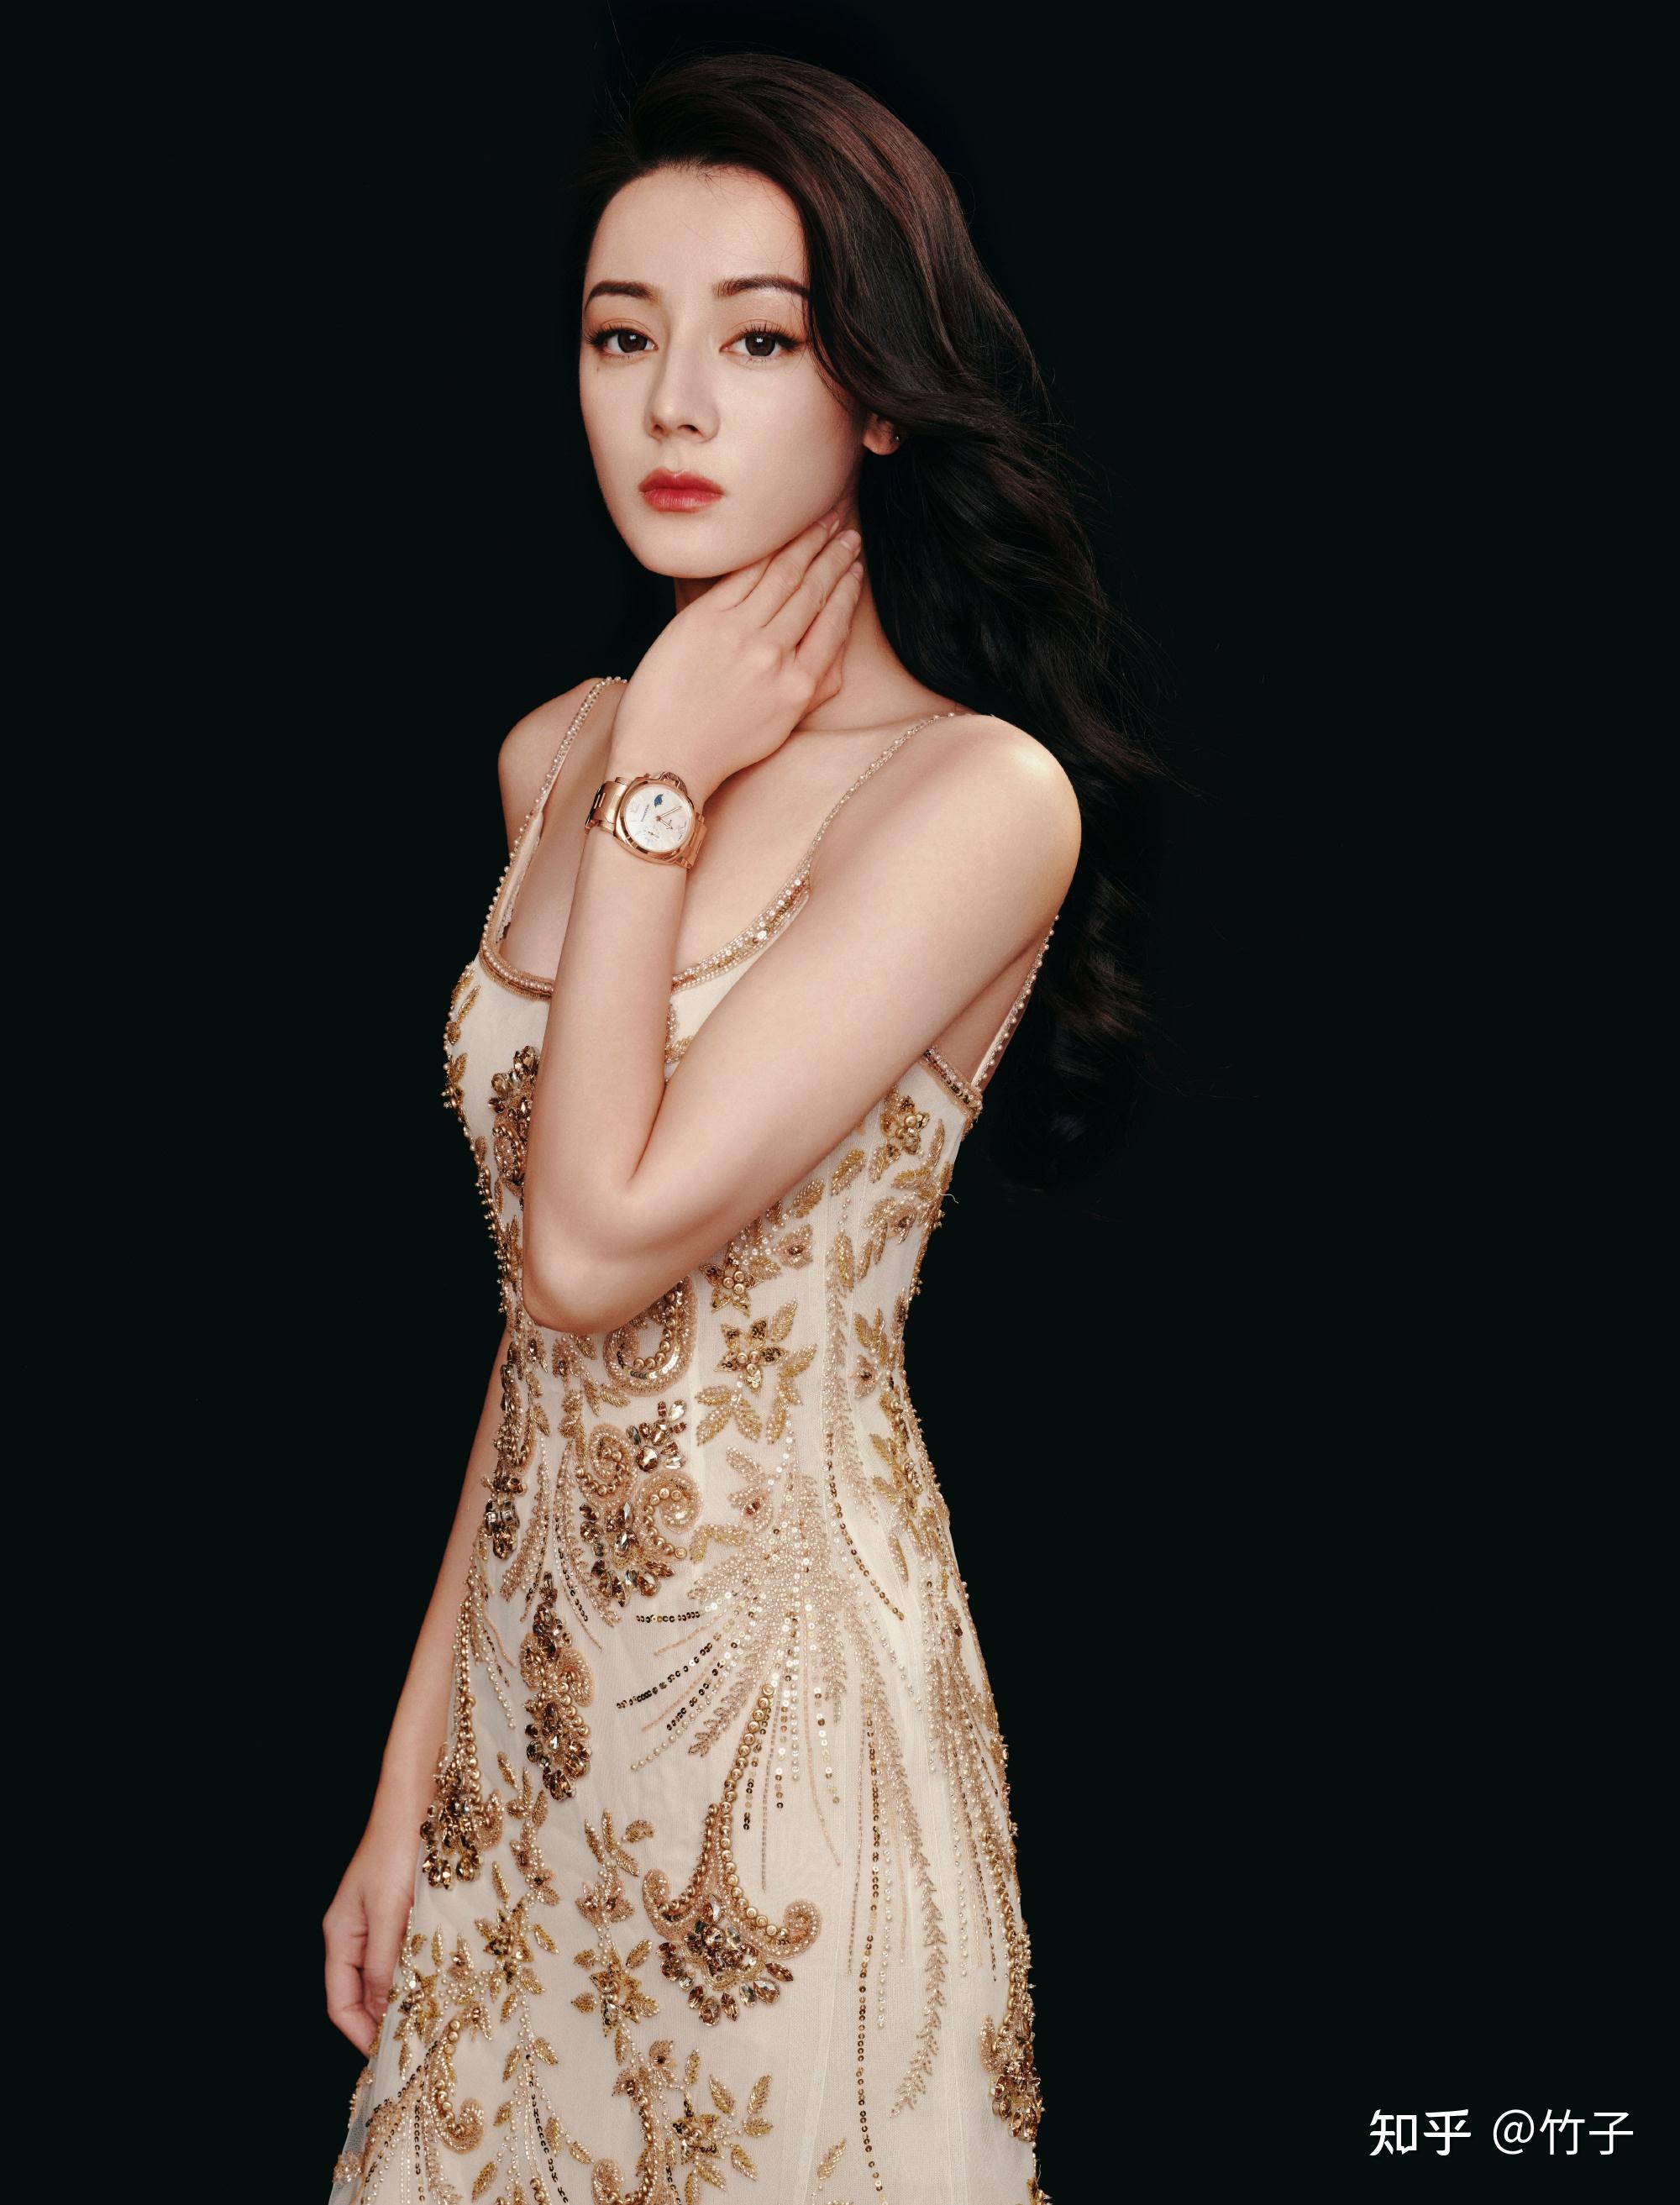 迪丽热巴最新美照,香槟色刺绣礼服裙星眸璀璨优雅至极,热巴好美